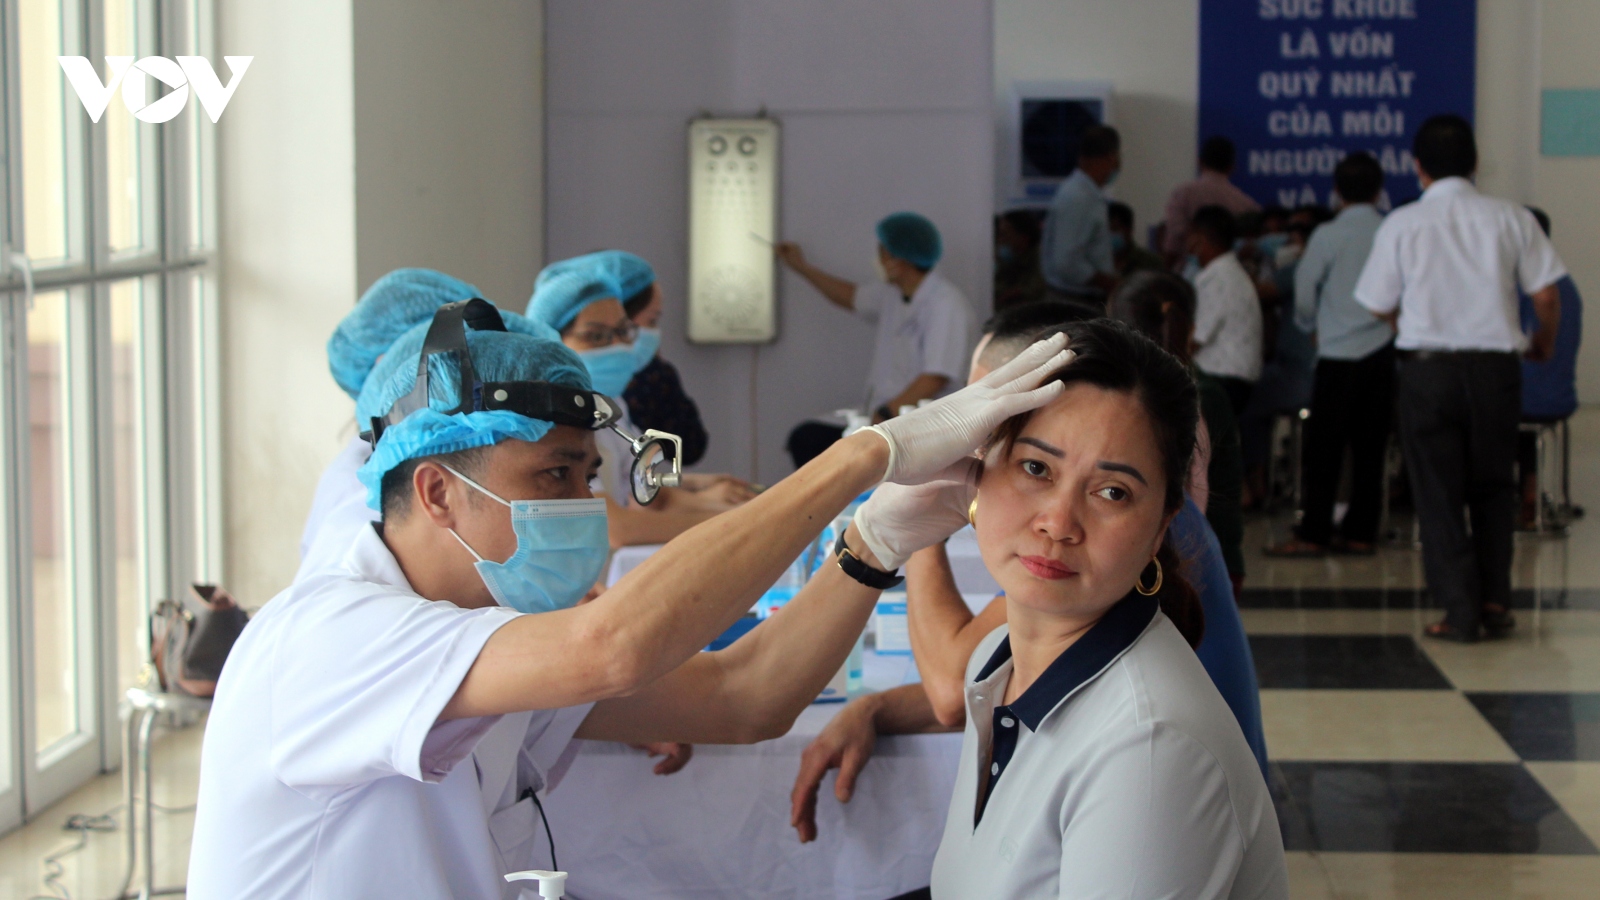 Sở Y tế Hà Nội tổ chức thăm khám sức khỏe miễn phí dành cho người dân Mê Linh